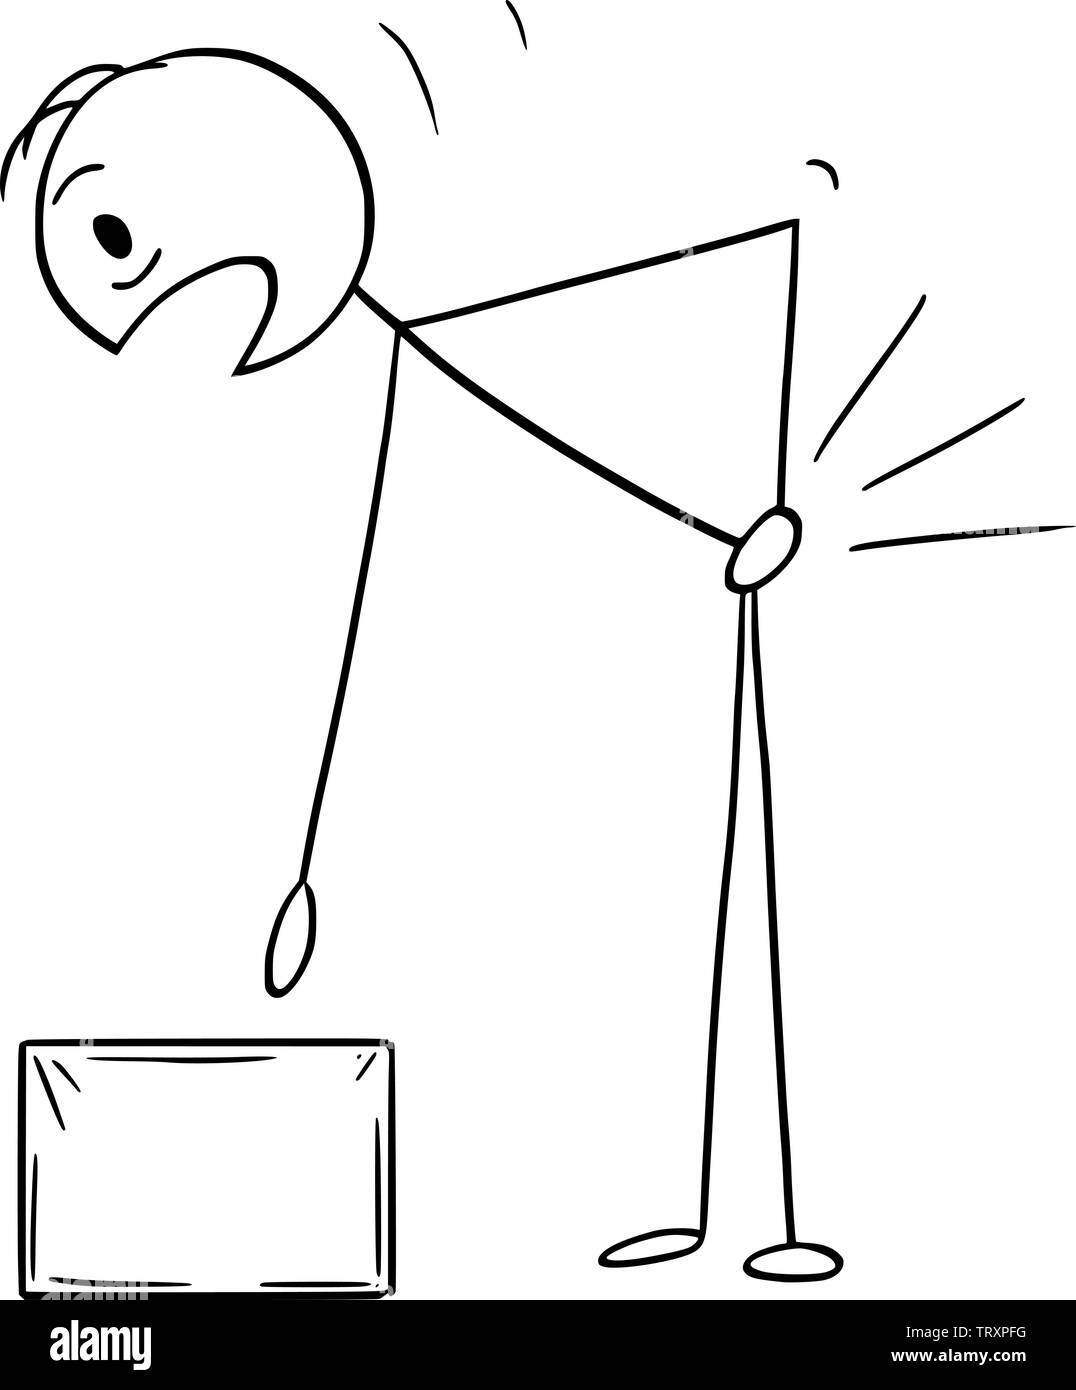 Vektor cartoon Strichmännchen Zeichnen konzeptionelle Darstellung der Mann, der den Rücken beim Anheben oder das Feld tragen verletzt. Rückenschmerzen oder Rückenschmerzen Konzept. Stock Vektor